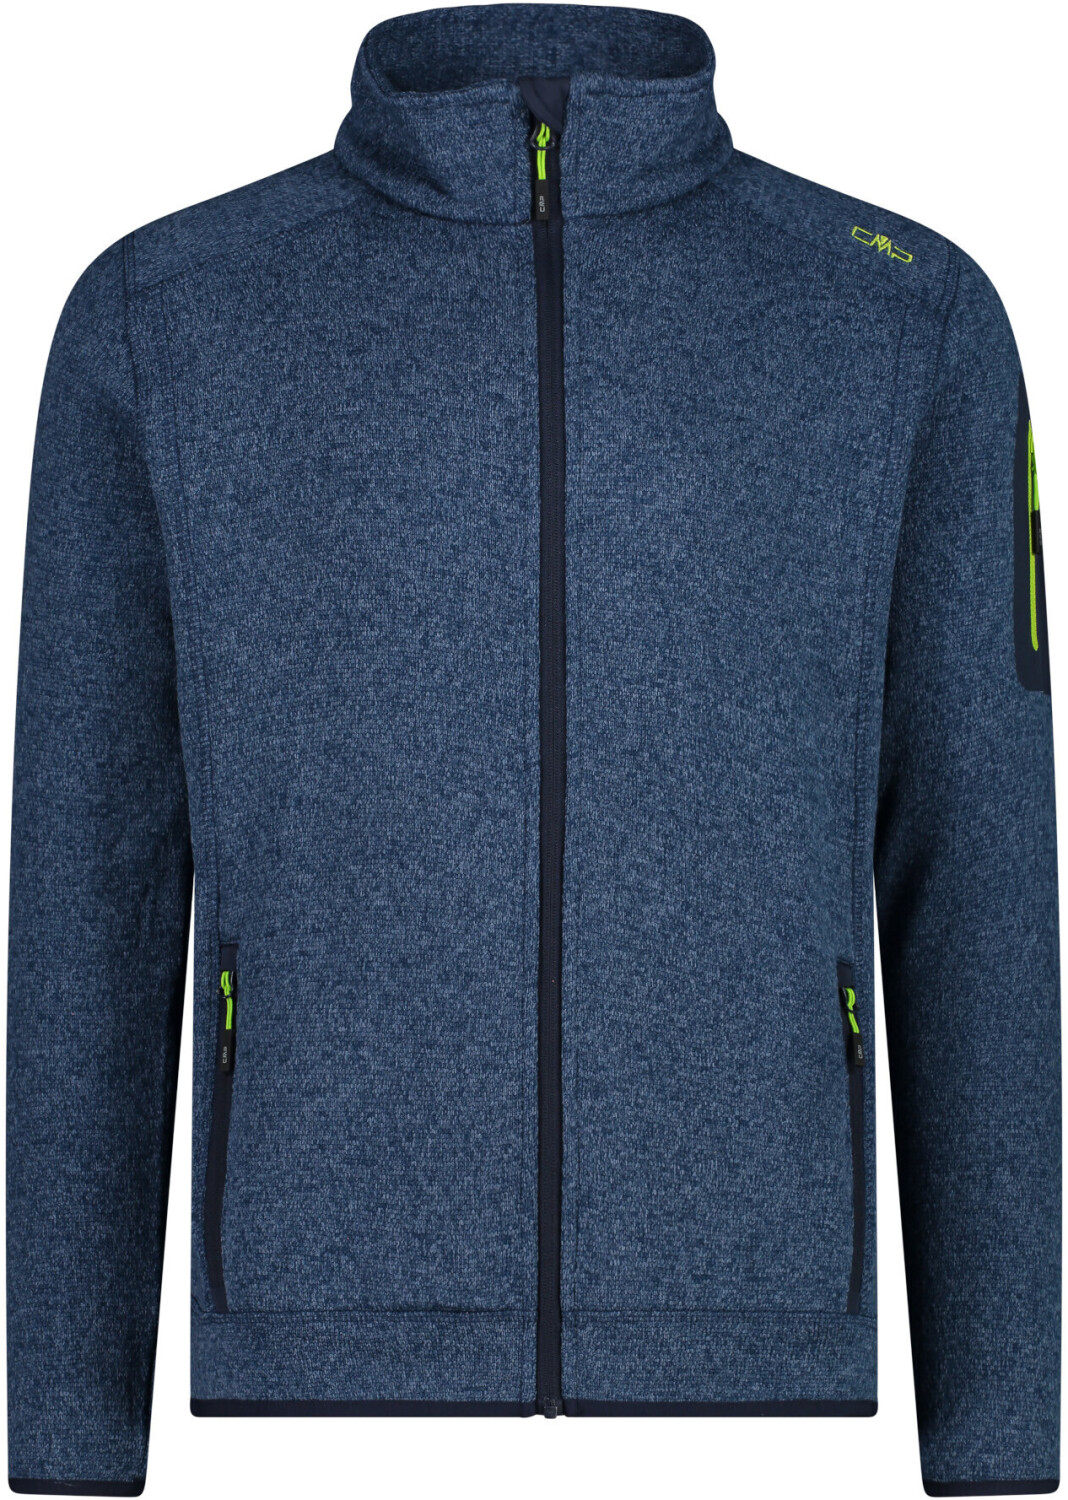 CMP Knit-Tech Jacket (3H60747) blue-limegreen ab 39,99 € | Preisvergleich  bei